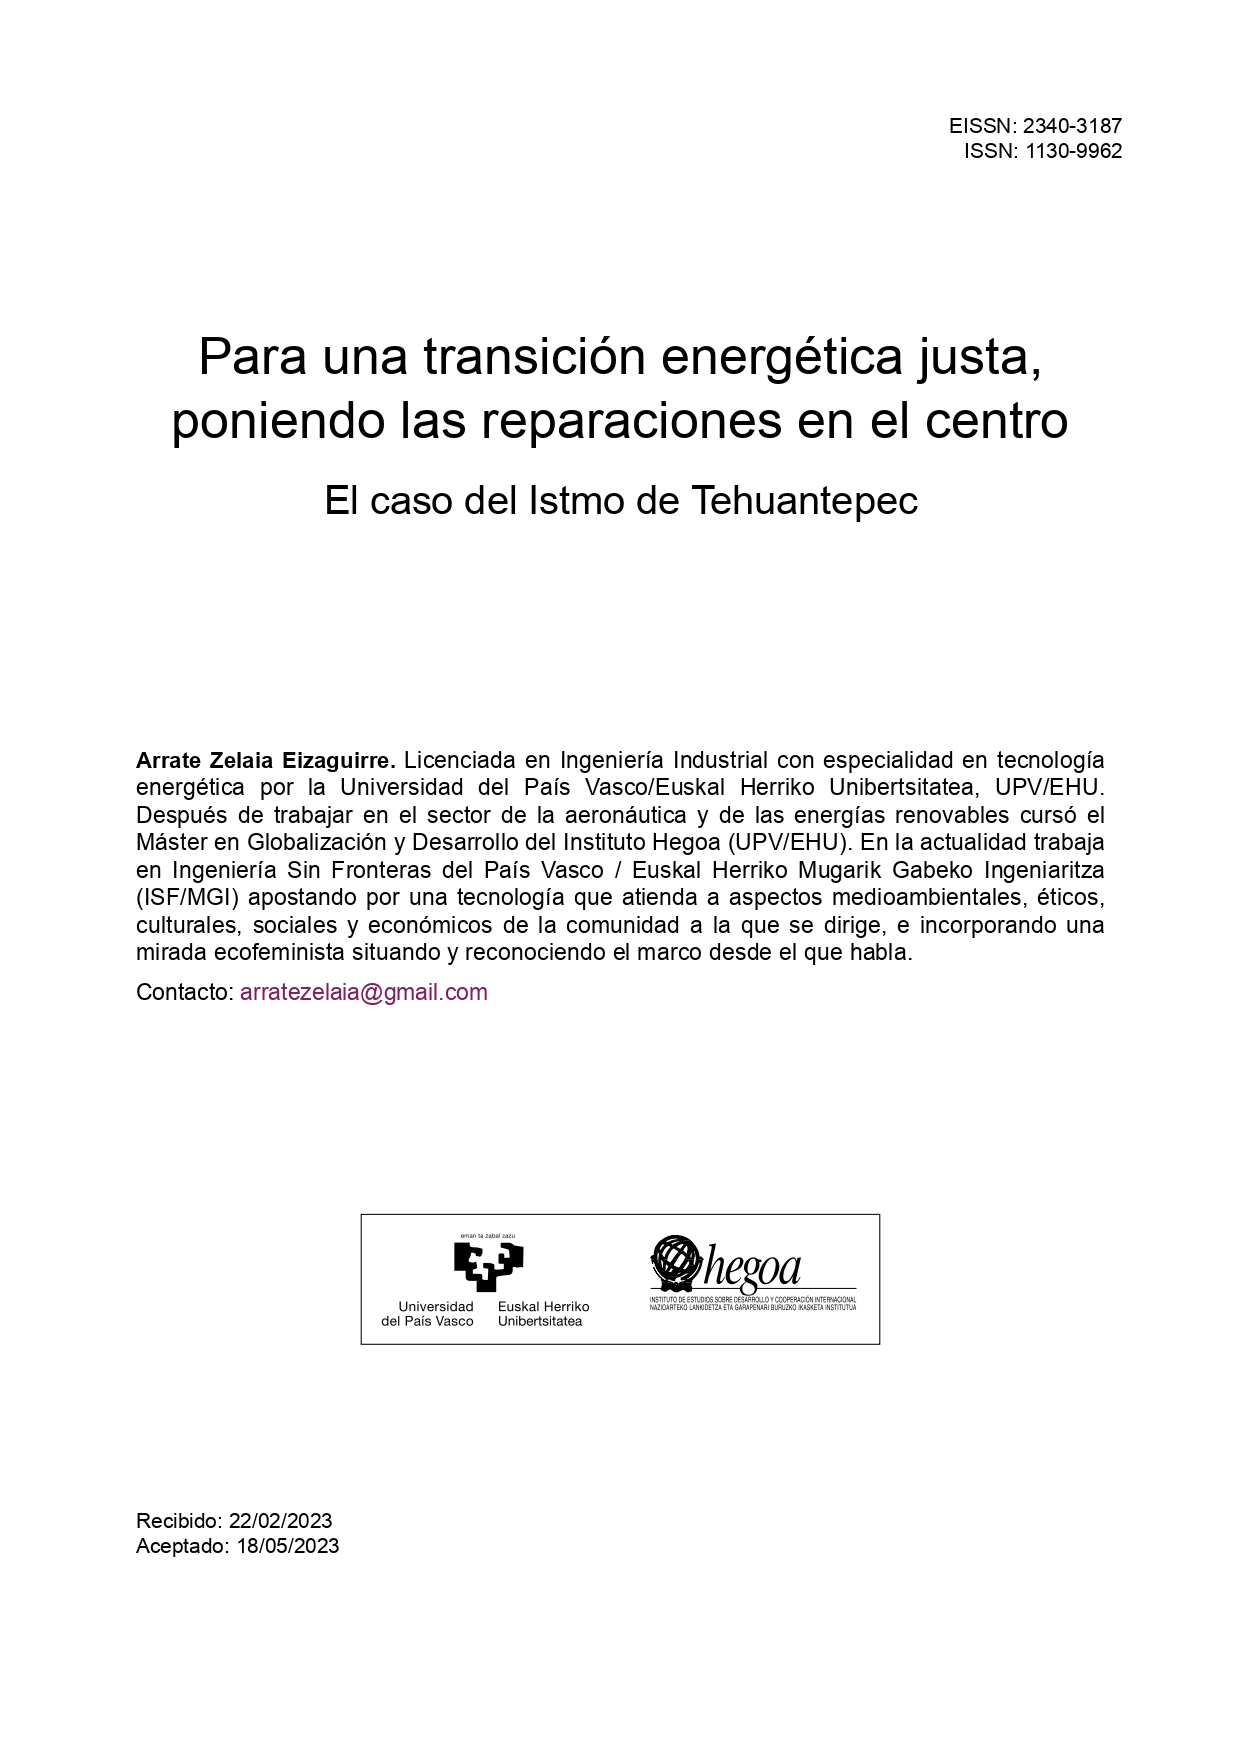 Portada del artículo de Arrate Zelaia sobre transición energética.